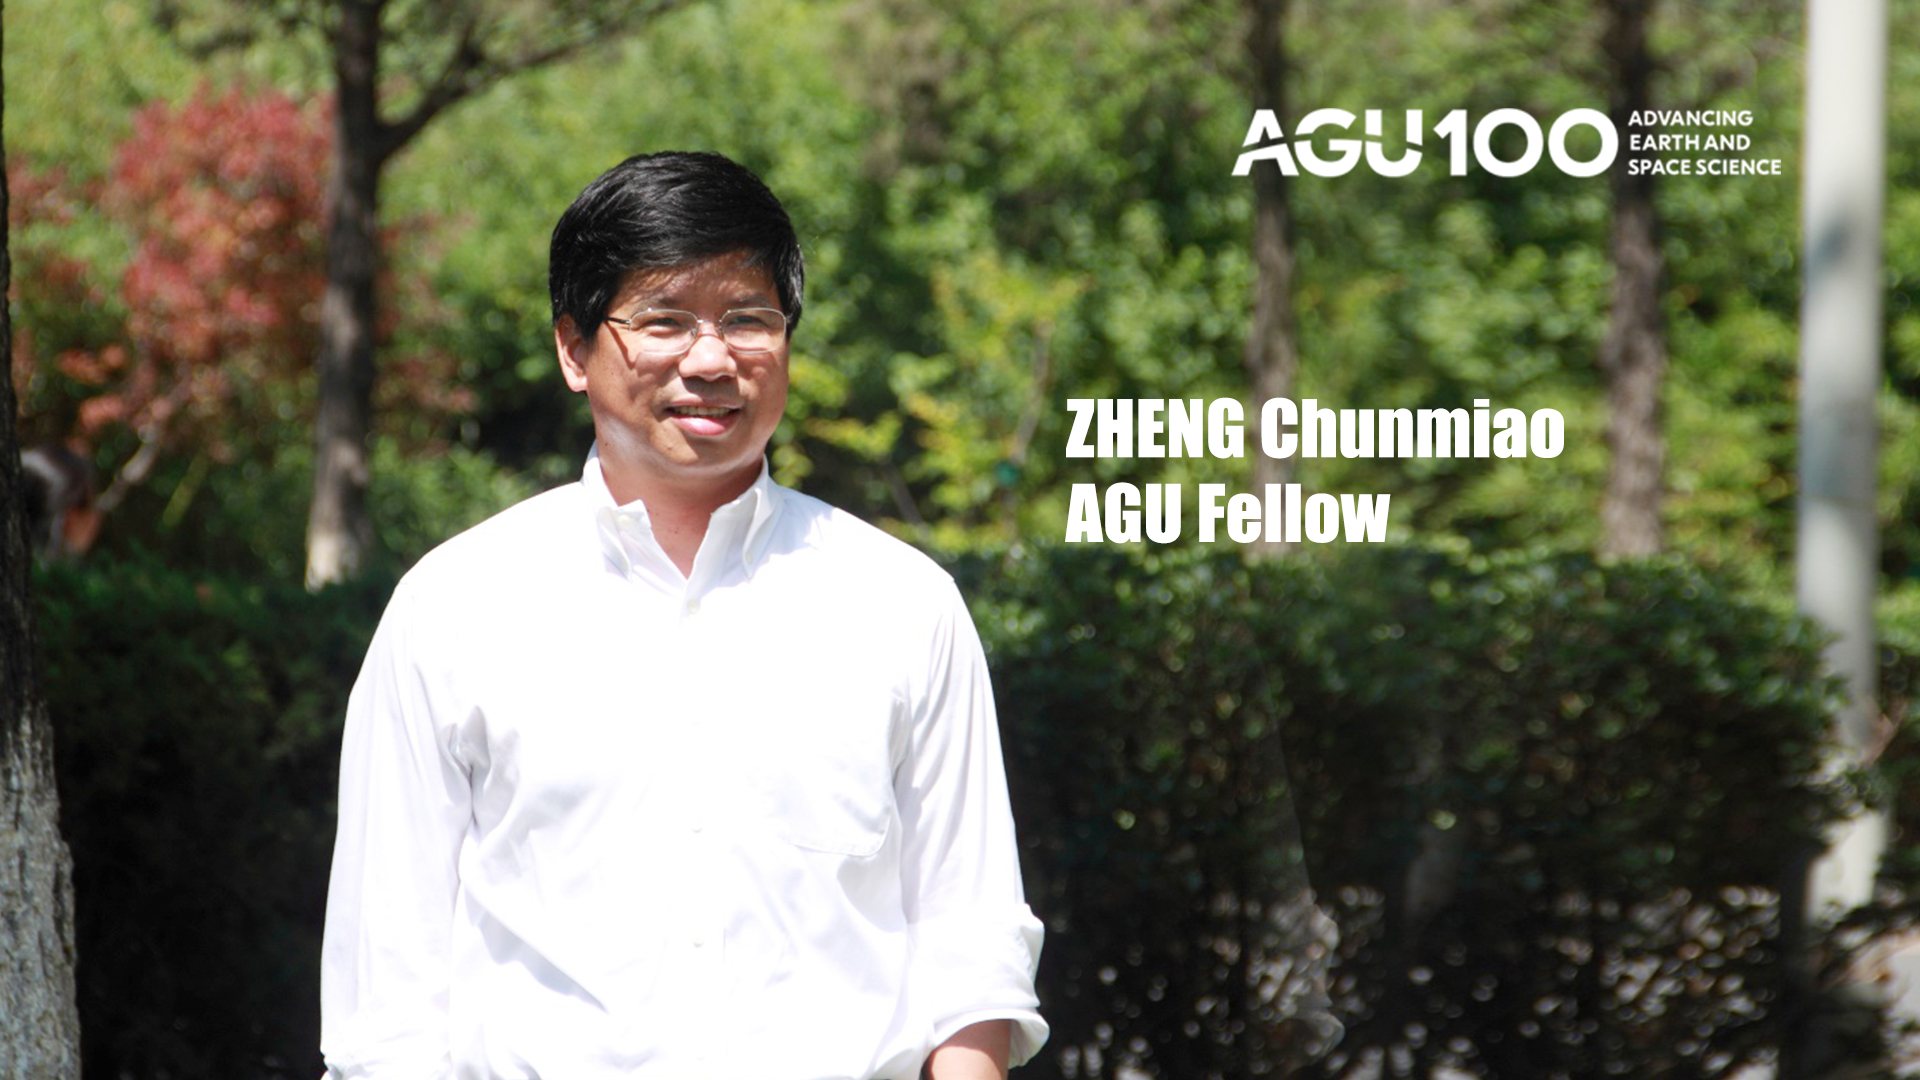 Professor Chunmiao Zheng elected AGU Fellow